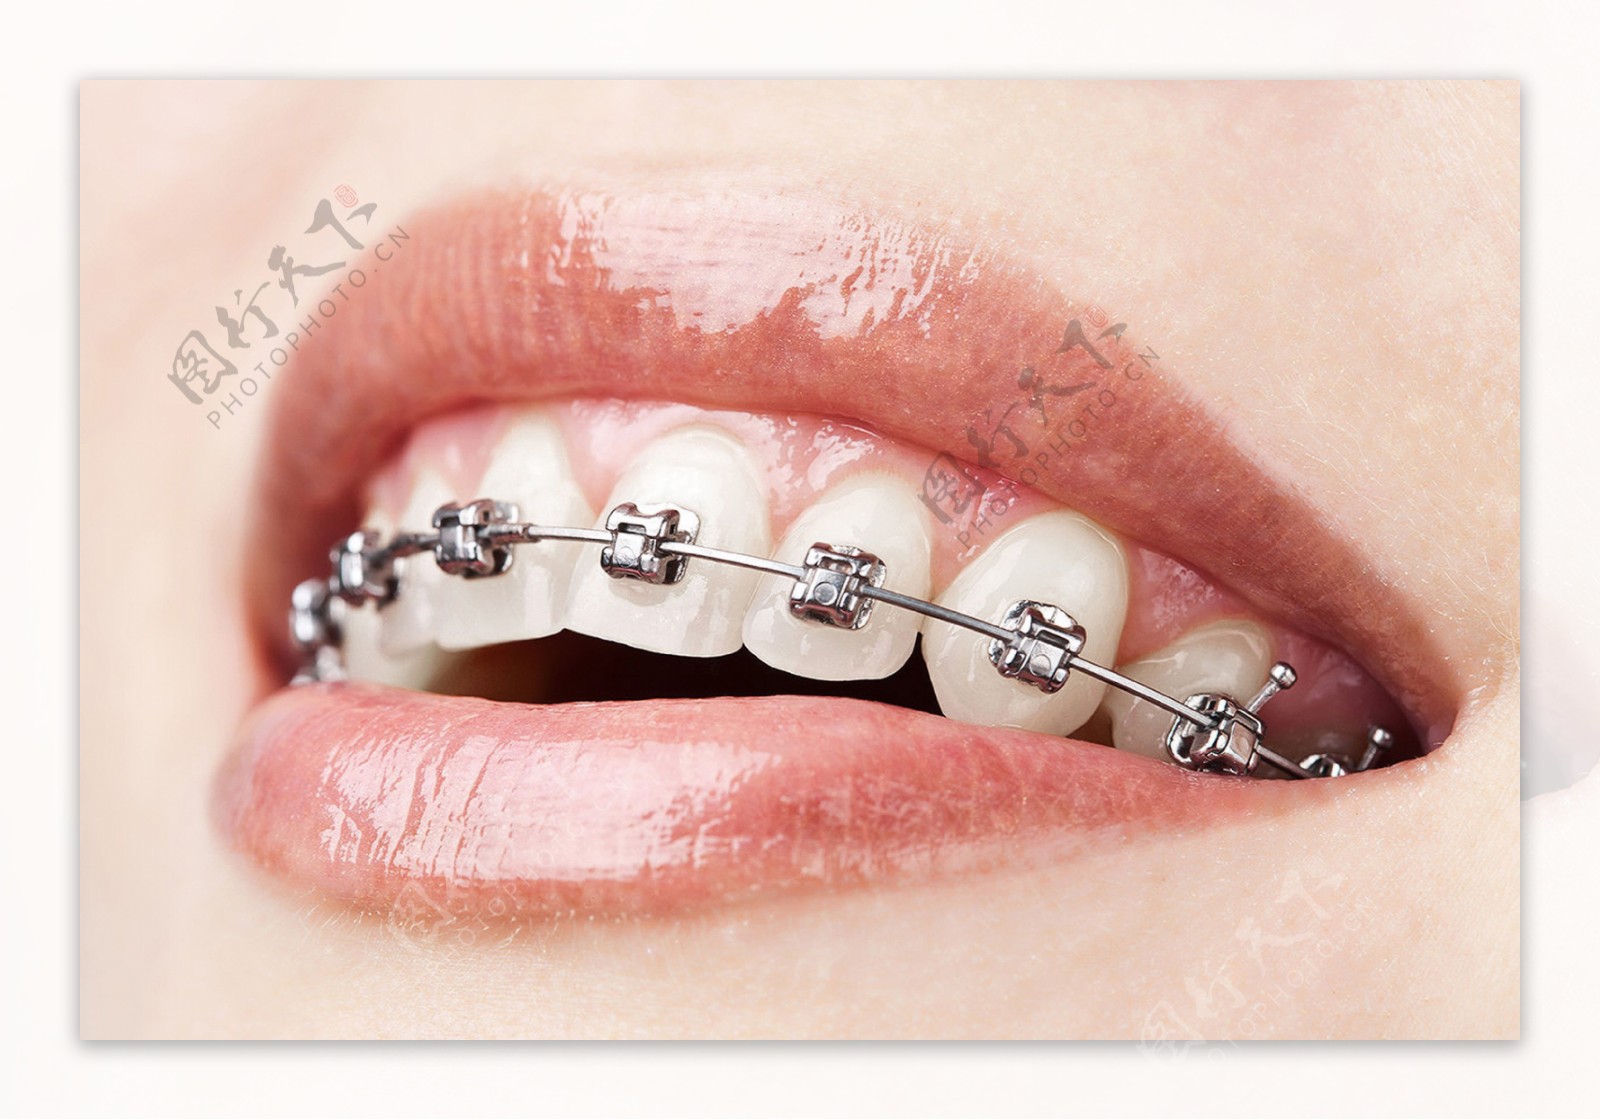 隐形牙齿矫正器和传统牙套 你选哪个 - 贝色口腔